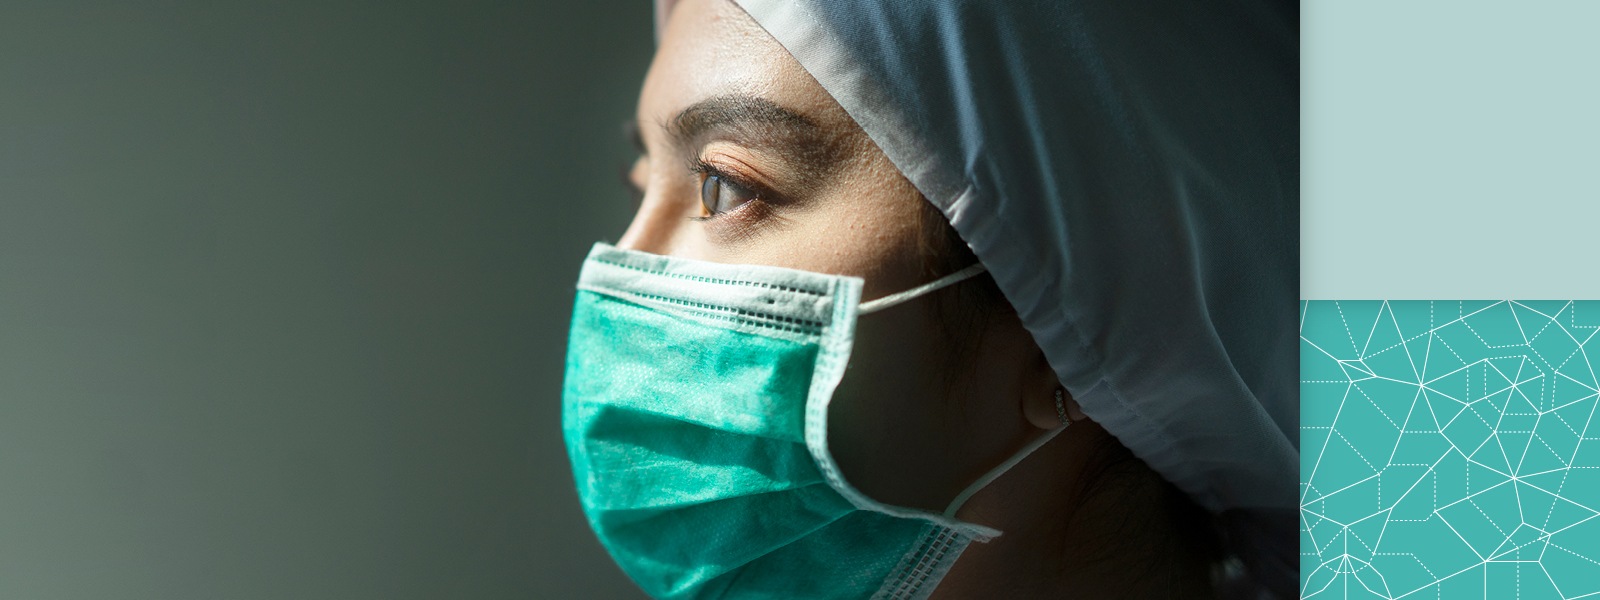 コロナウイルス (Covid-19) 対策として医療用マスクを装着したアジア人女性医師。Covid-19 検疫のコンセプト画像。